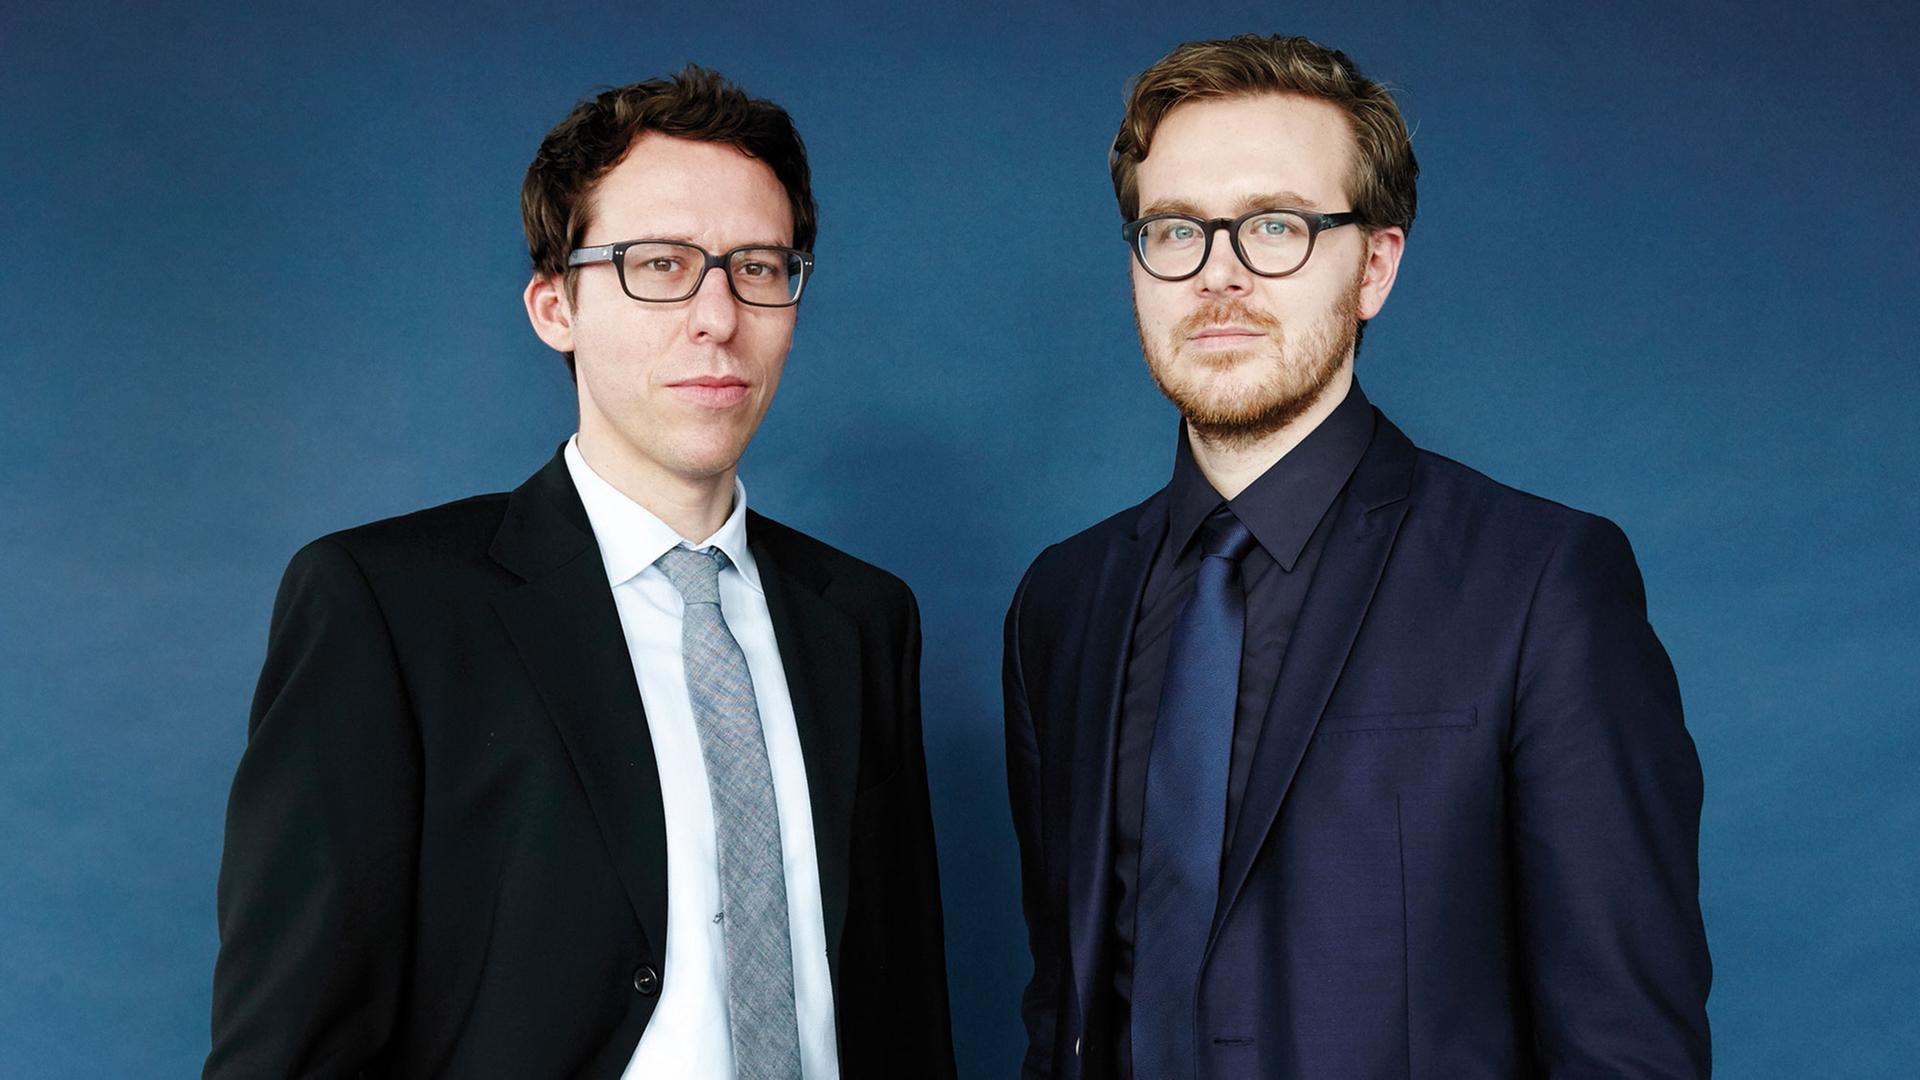 Die Journalisten Bastian Obermayer und Frederik Obermaier